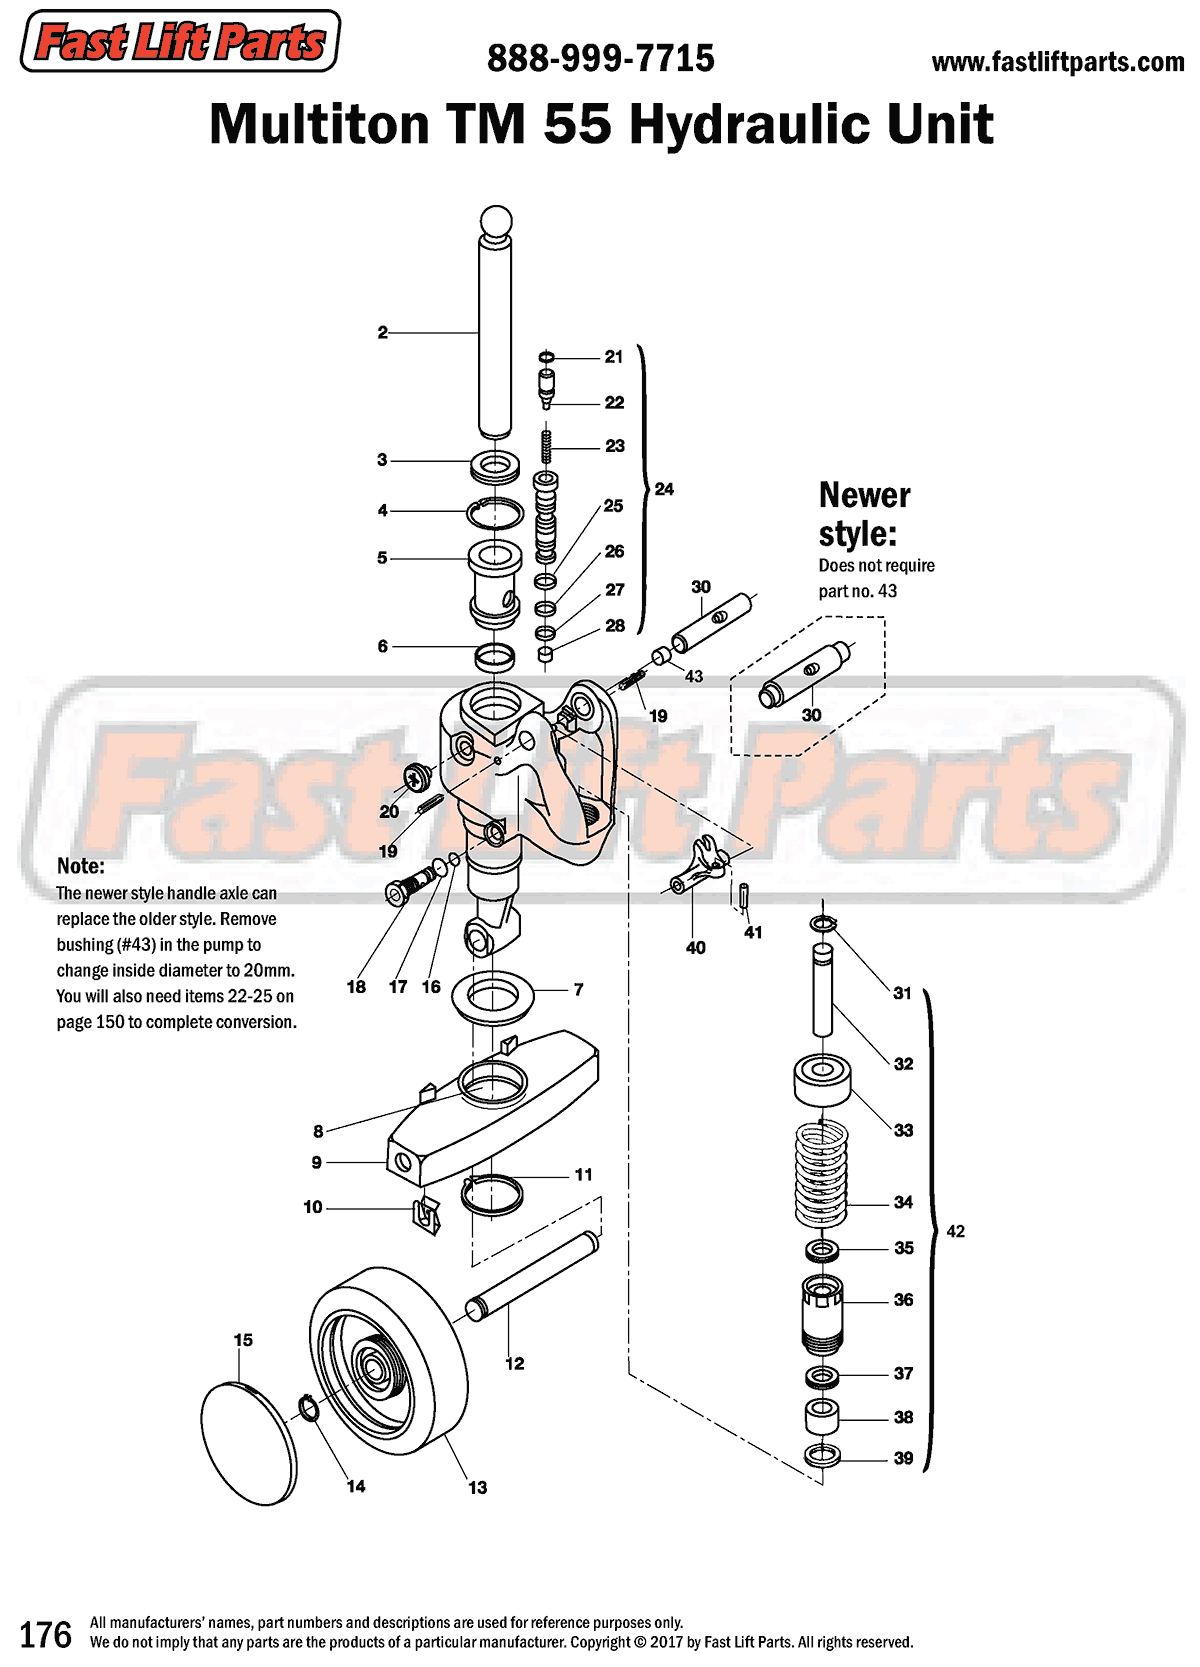 Multiton TM 55 Hydraulic Unit Line Drawing